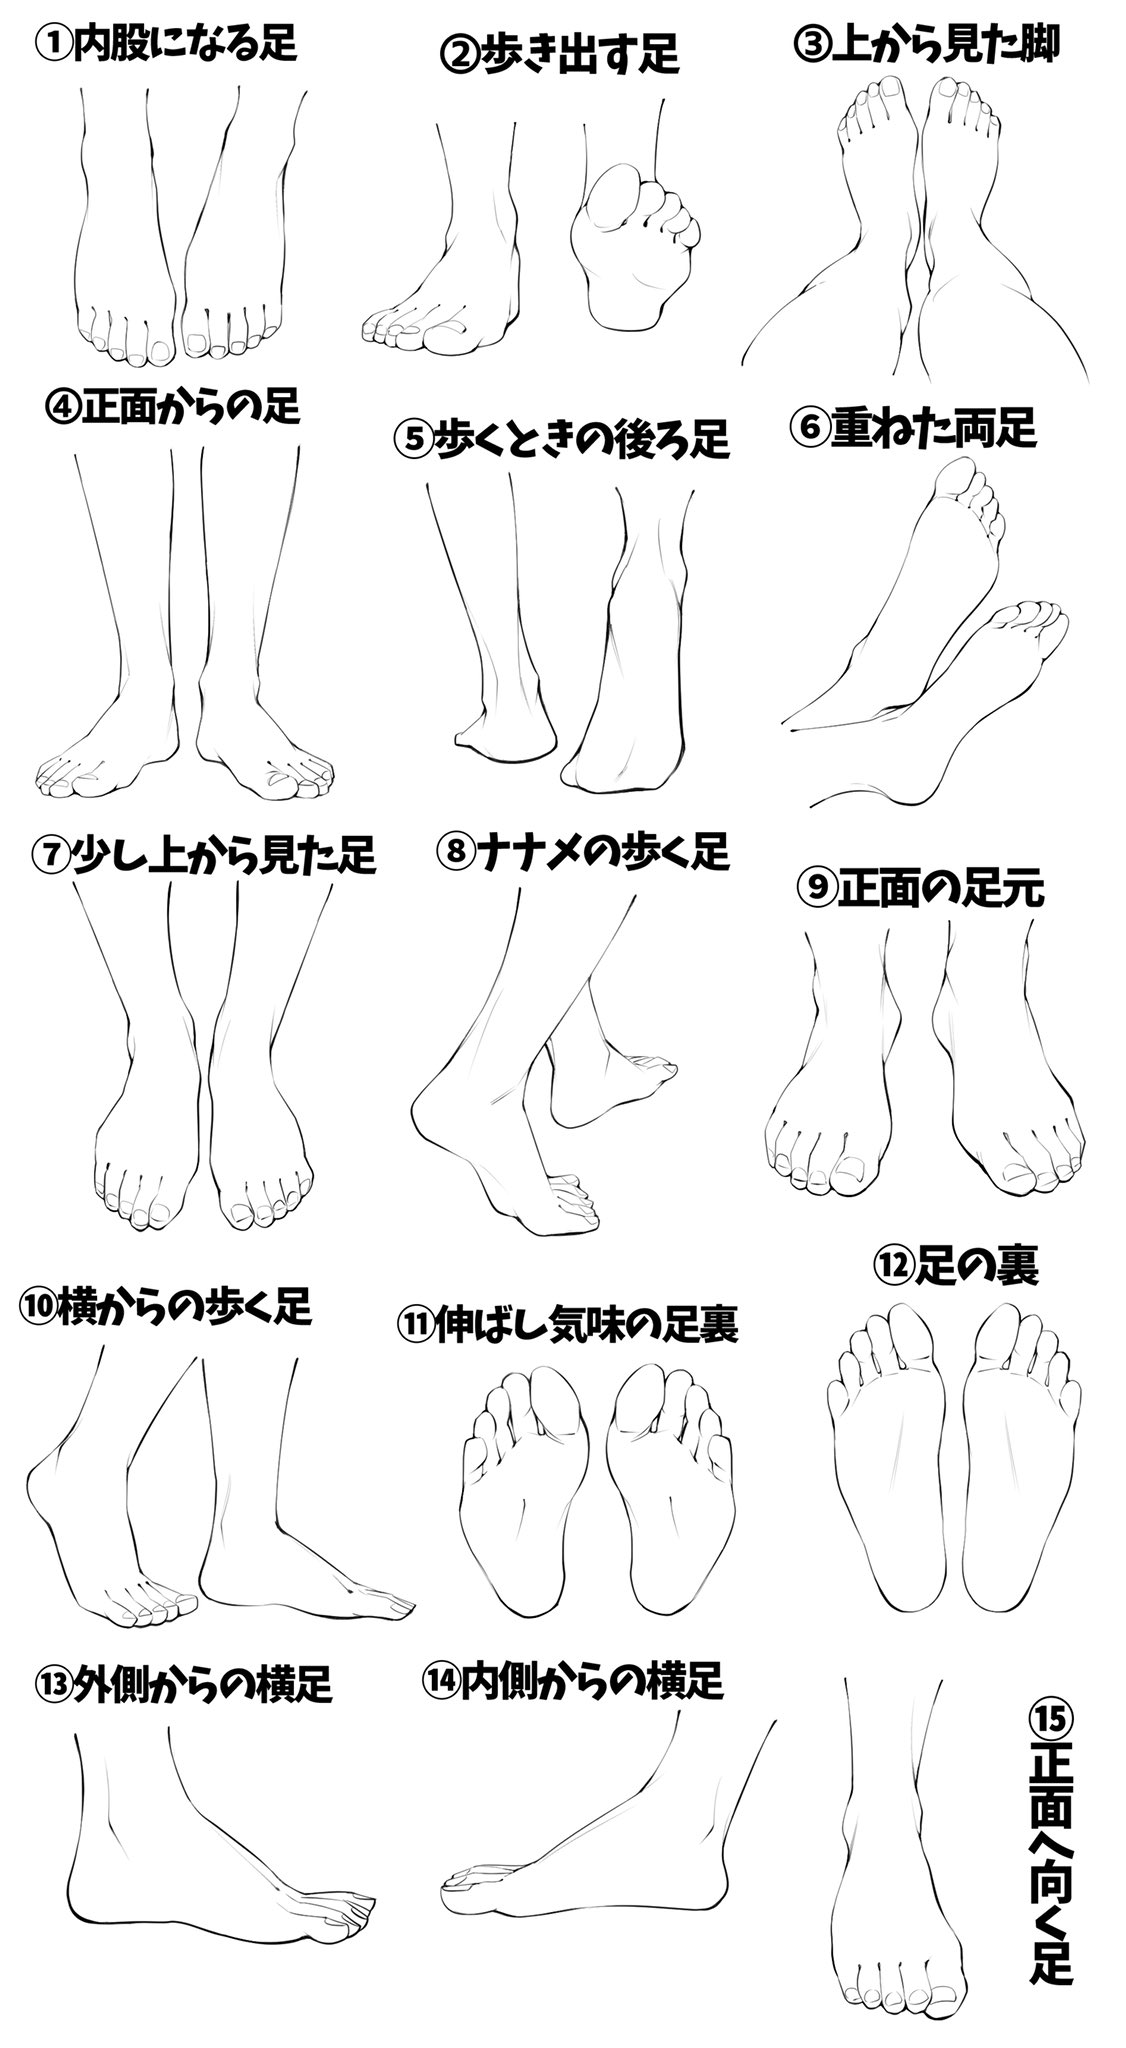 吉村拓也 イラスト講座 足がヘタになる という人へ 足の描き方模写パターン表 です ご自由に練習にお使いください T Co Wpovf5vrbh Twitter